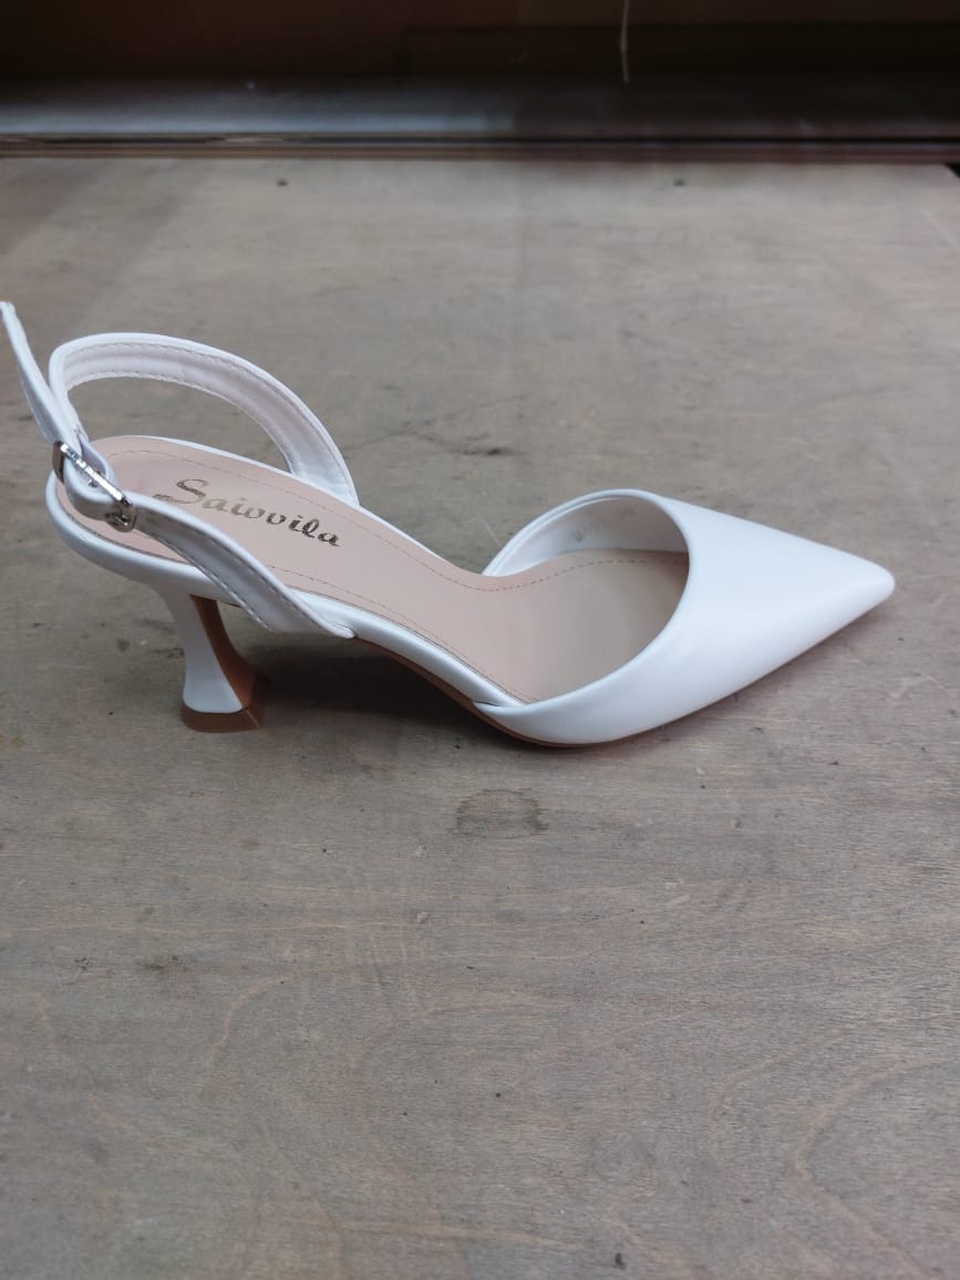 Босоножки на каблуке белые - 2 500 ₽, заказать онлайн.